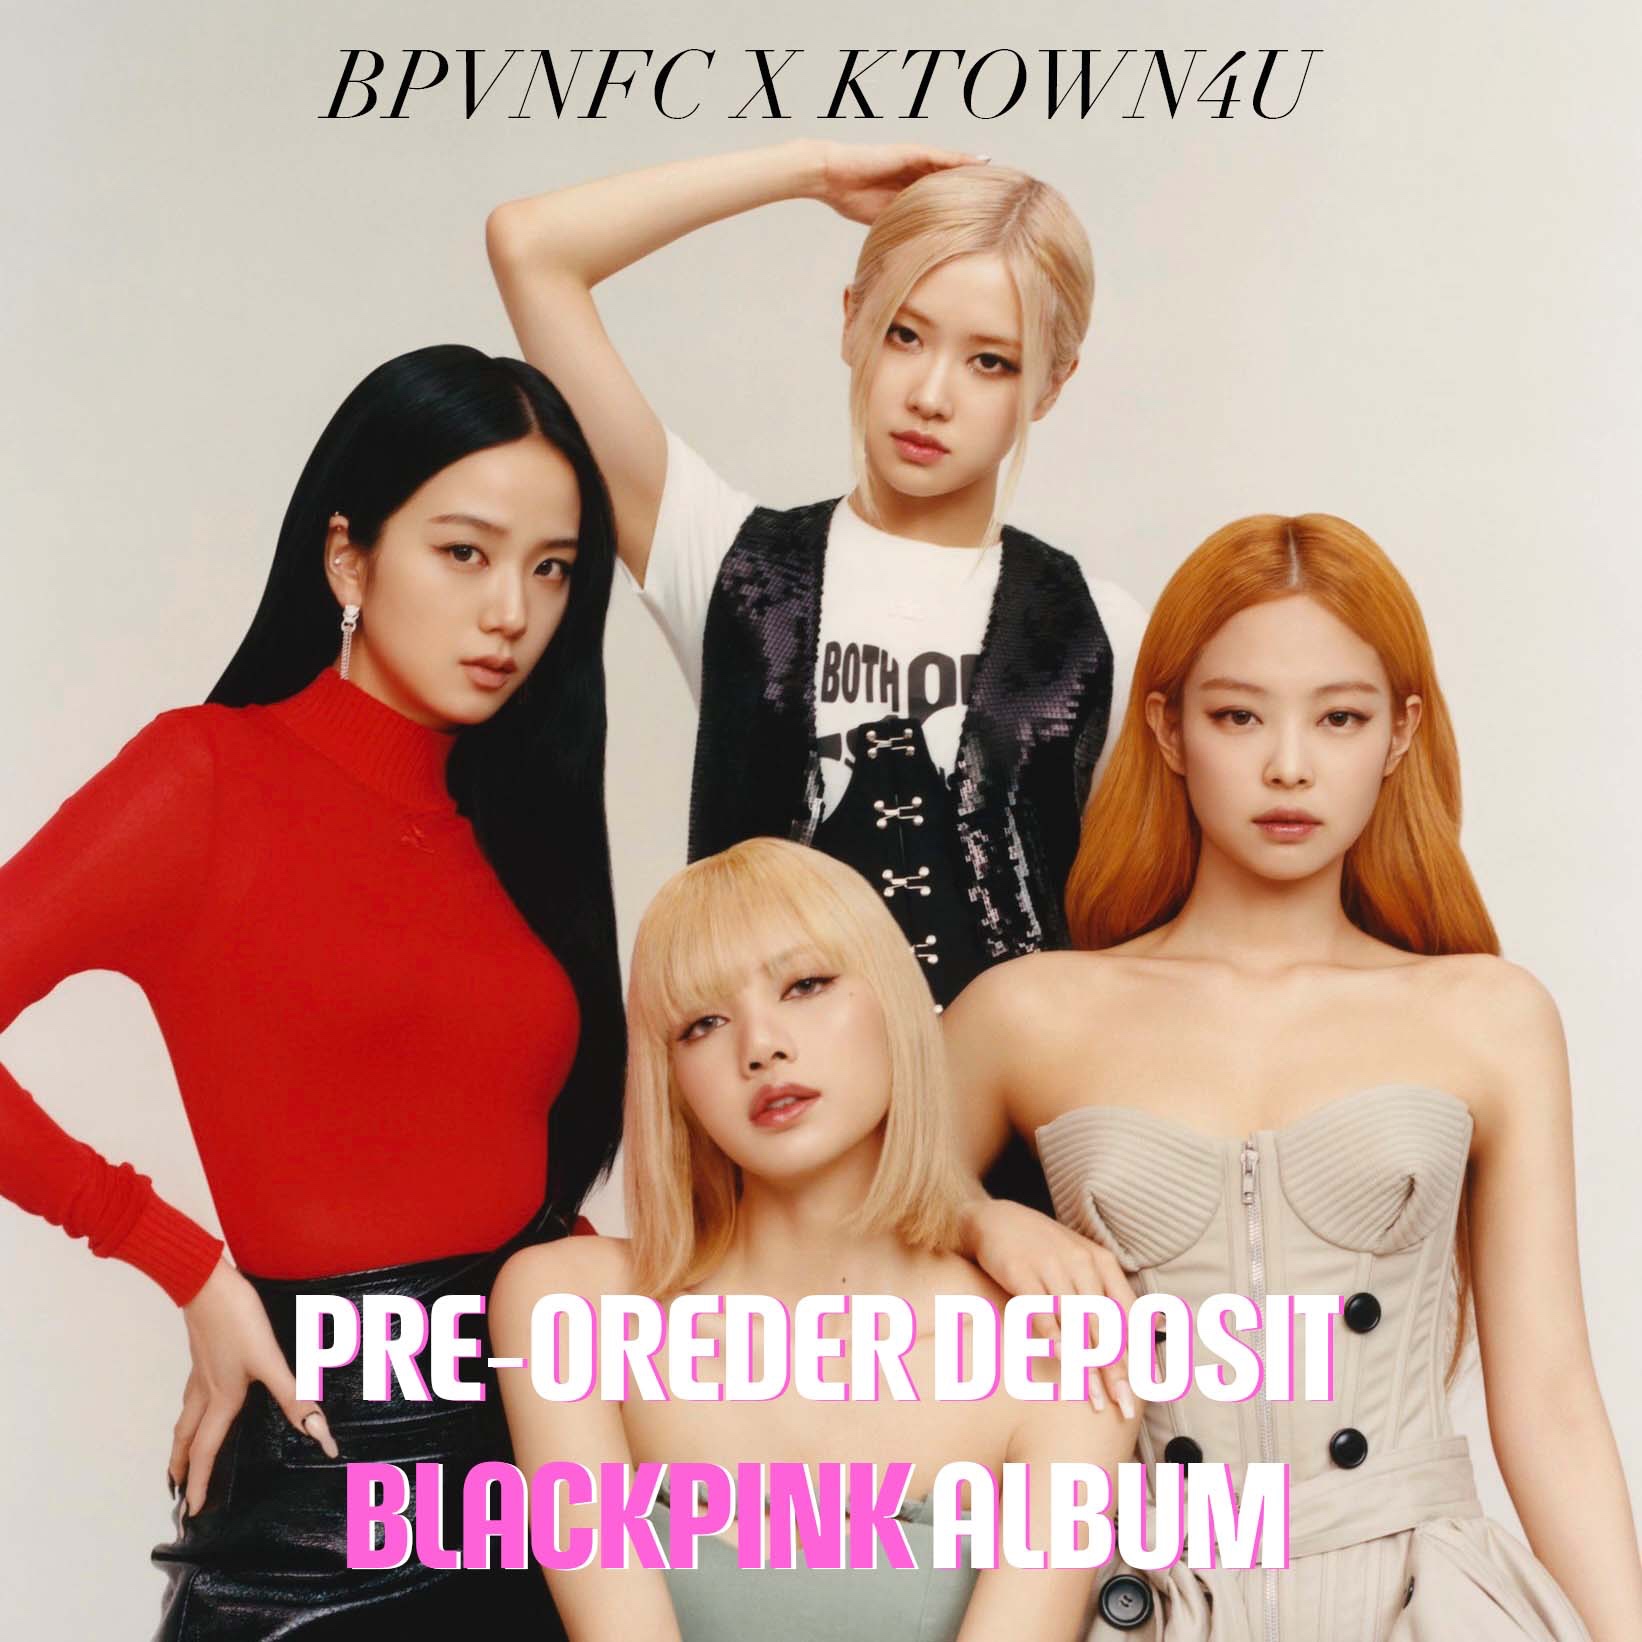 [Pre-order Deposit] Shipped-back Albums Deposits for Blackpink @bpvnfc